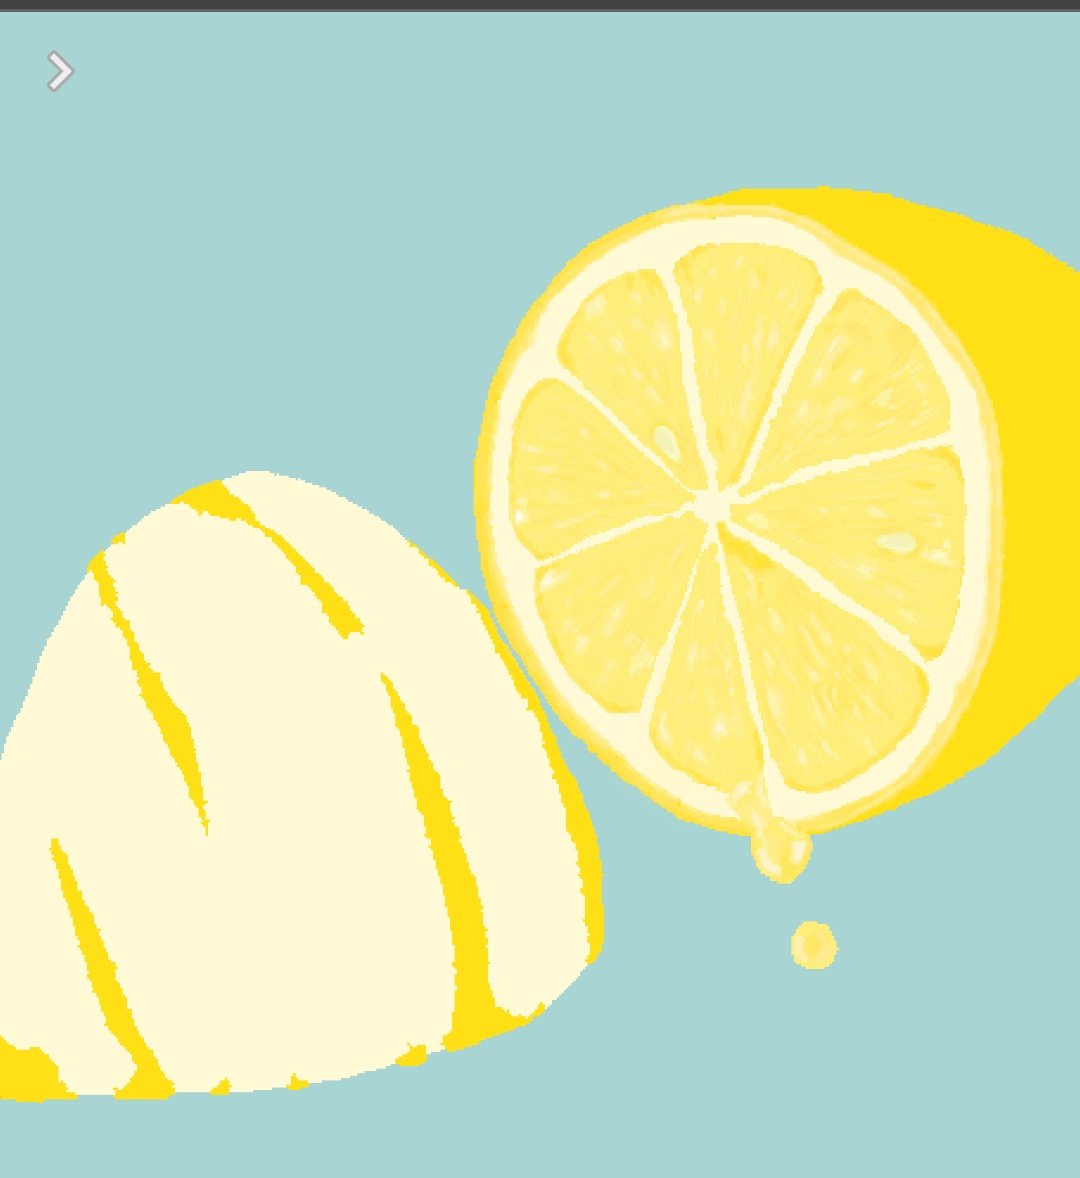 ないものねだり カワスタ3部7 14 7 出展 進捗 レモンの皮に一旦凹凸をつけてみたりもしたのですが 今回のコンセプトはリアルさではないことを思い出したので無しになりました 今は背景の色で迷ってます 林檎verと同じにするか果物ごとに変えていくか